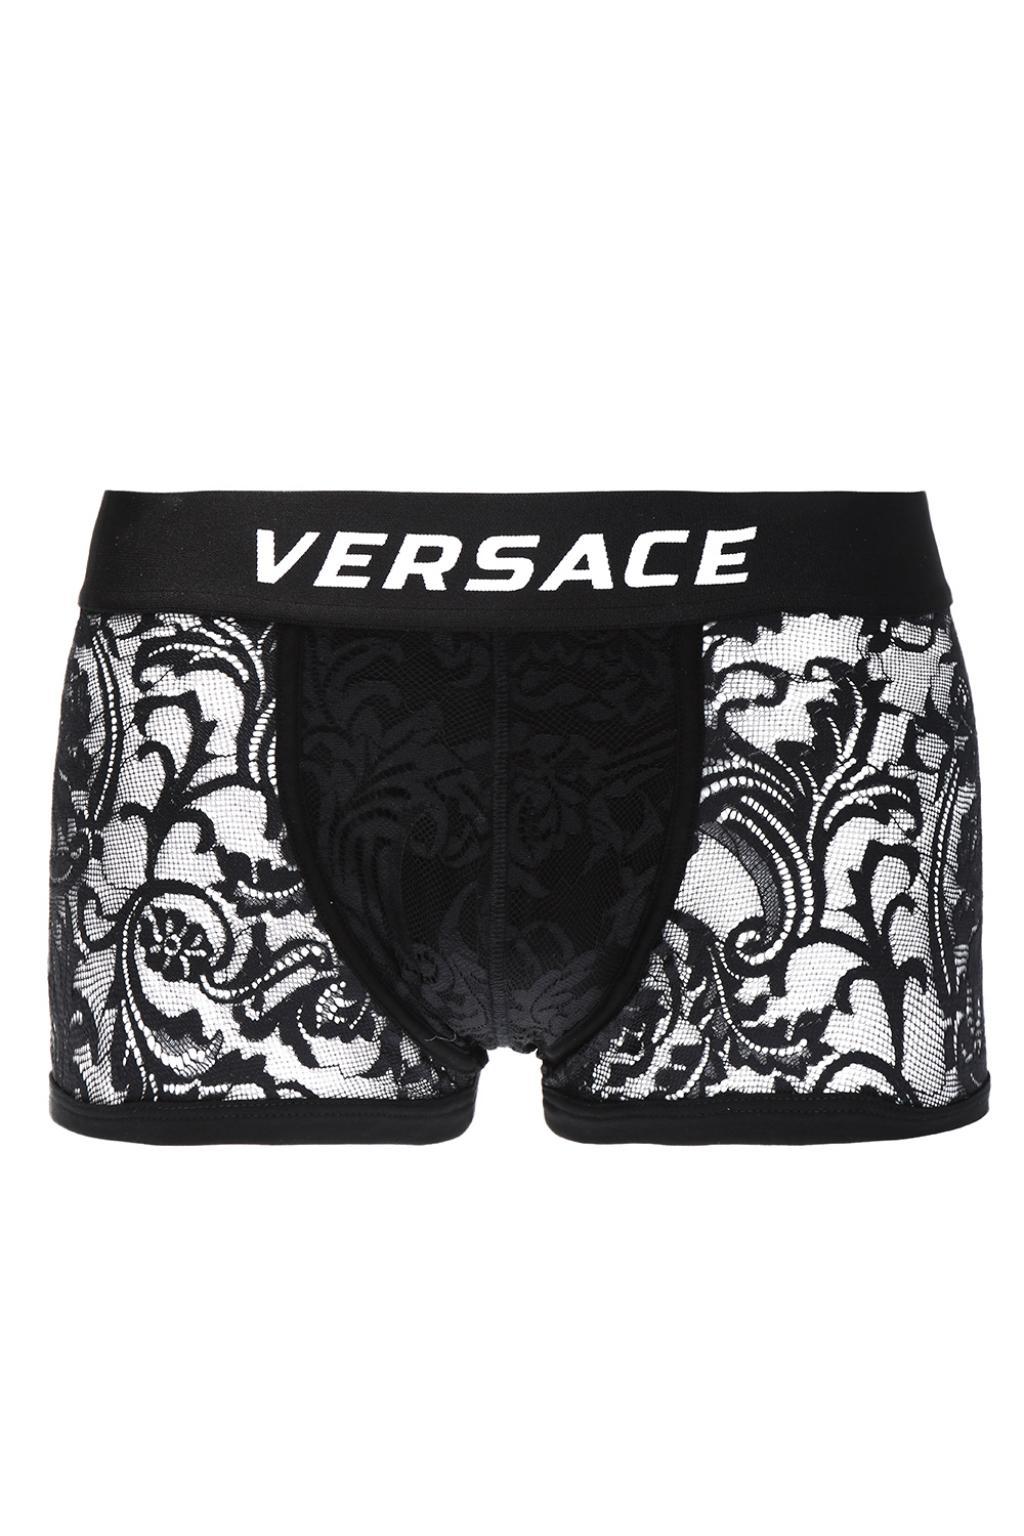 versace lace boxer briefs